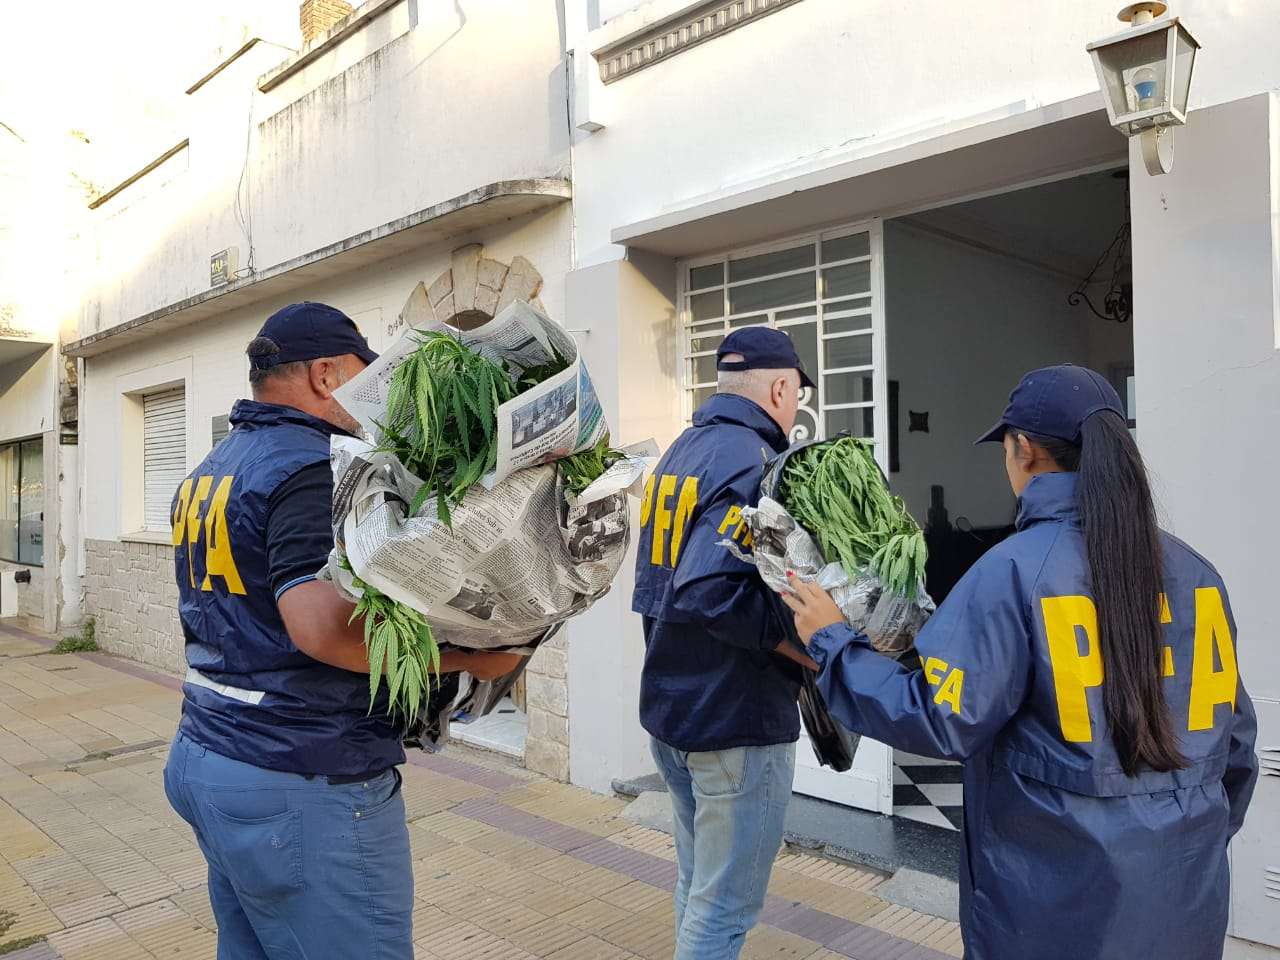 Secuestraron una importante cantidad de plantas de marihuana de un domicilio ubicado en Sarmiento al 200